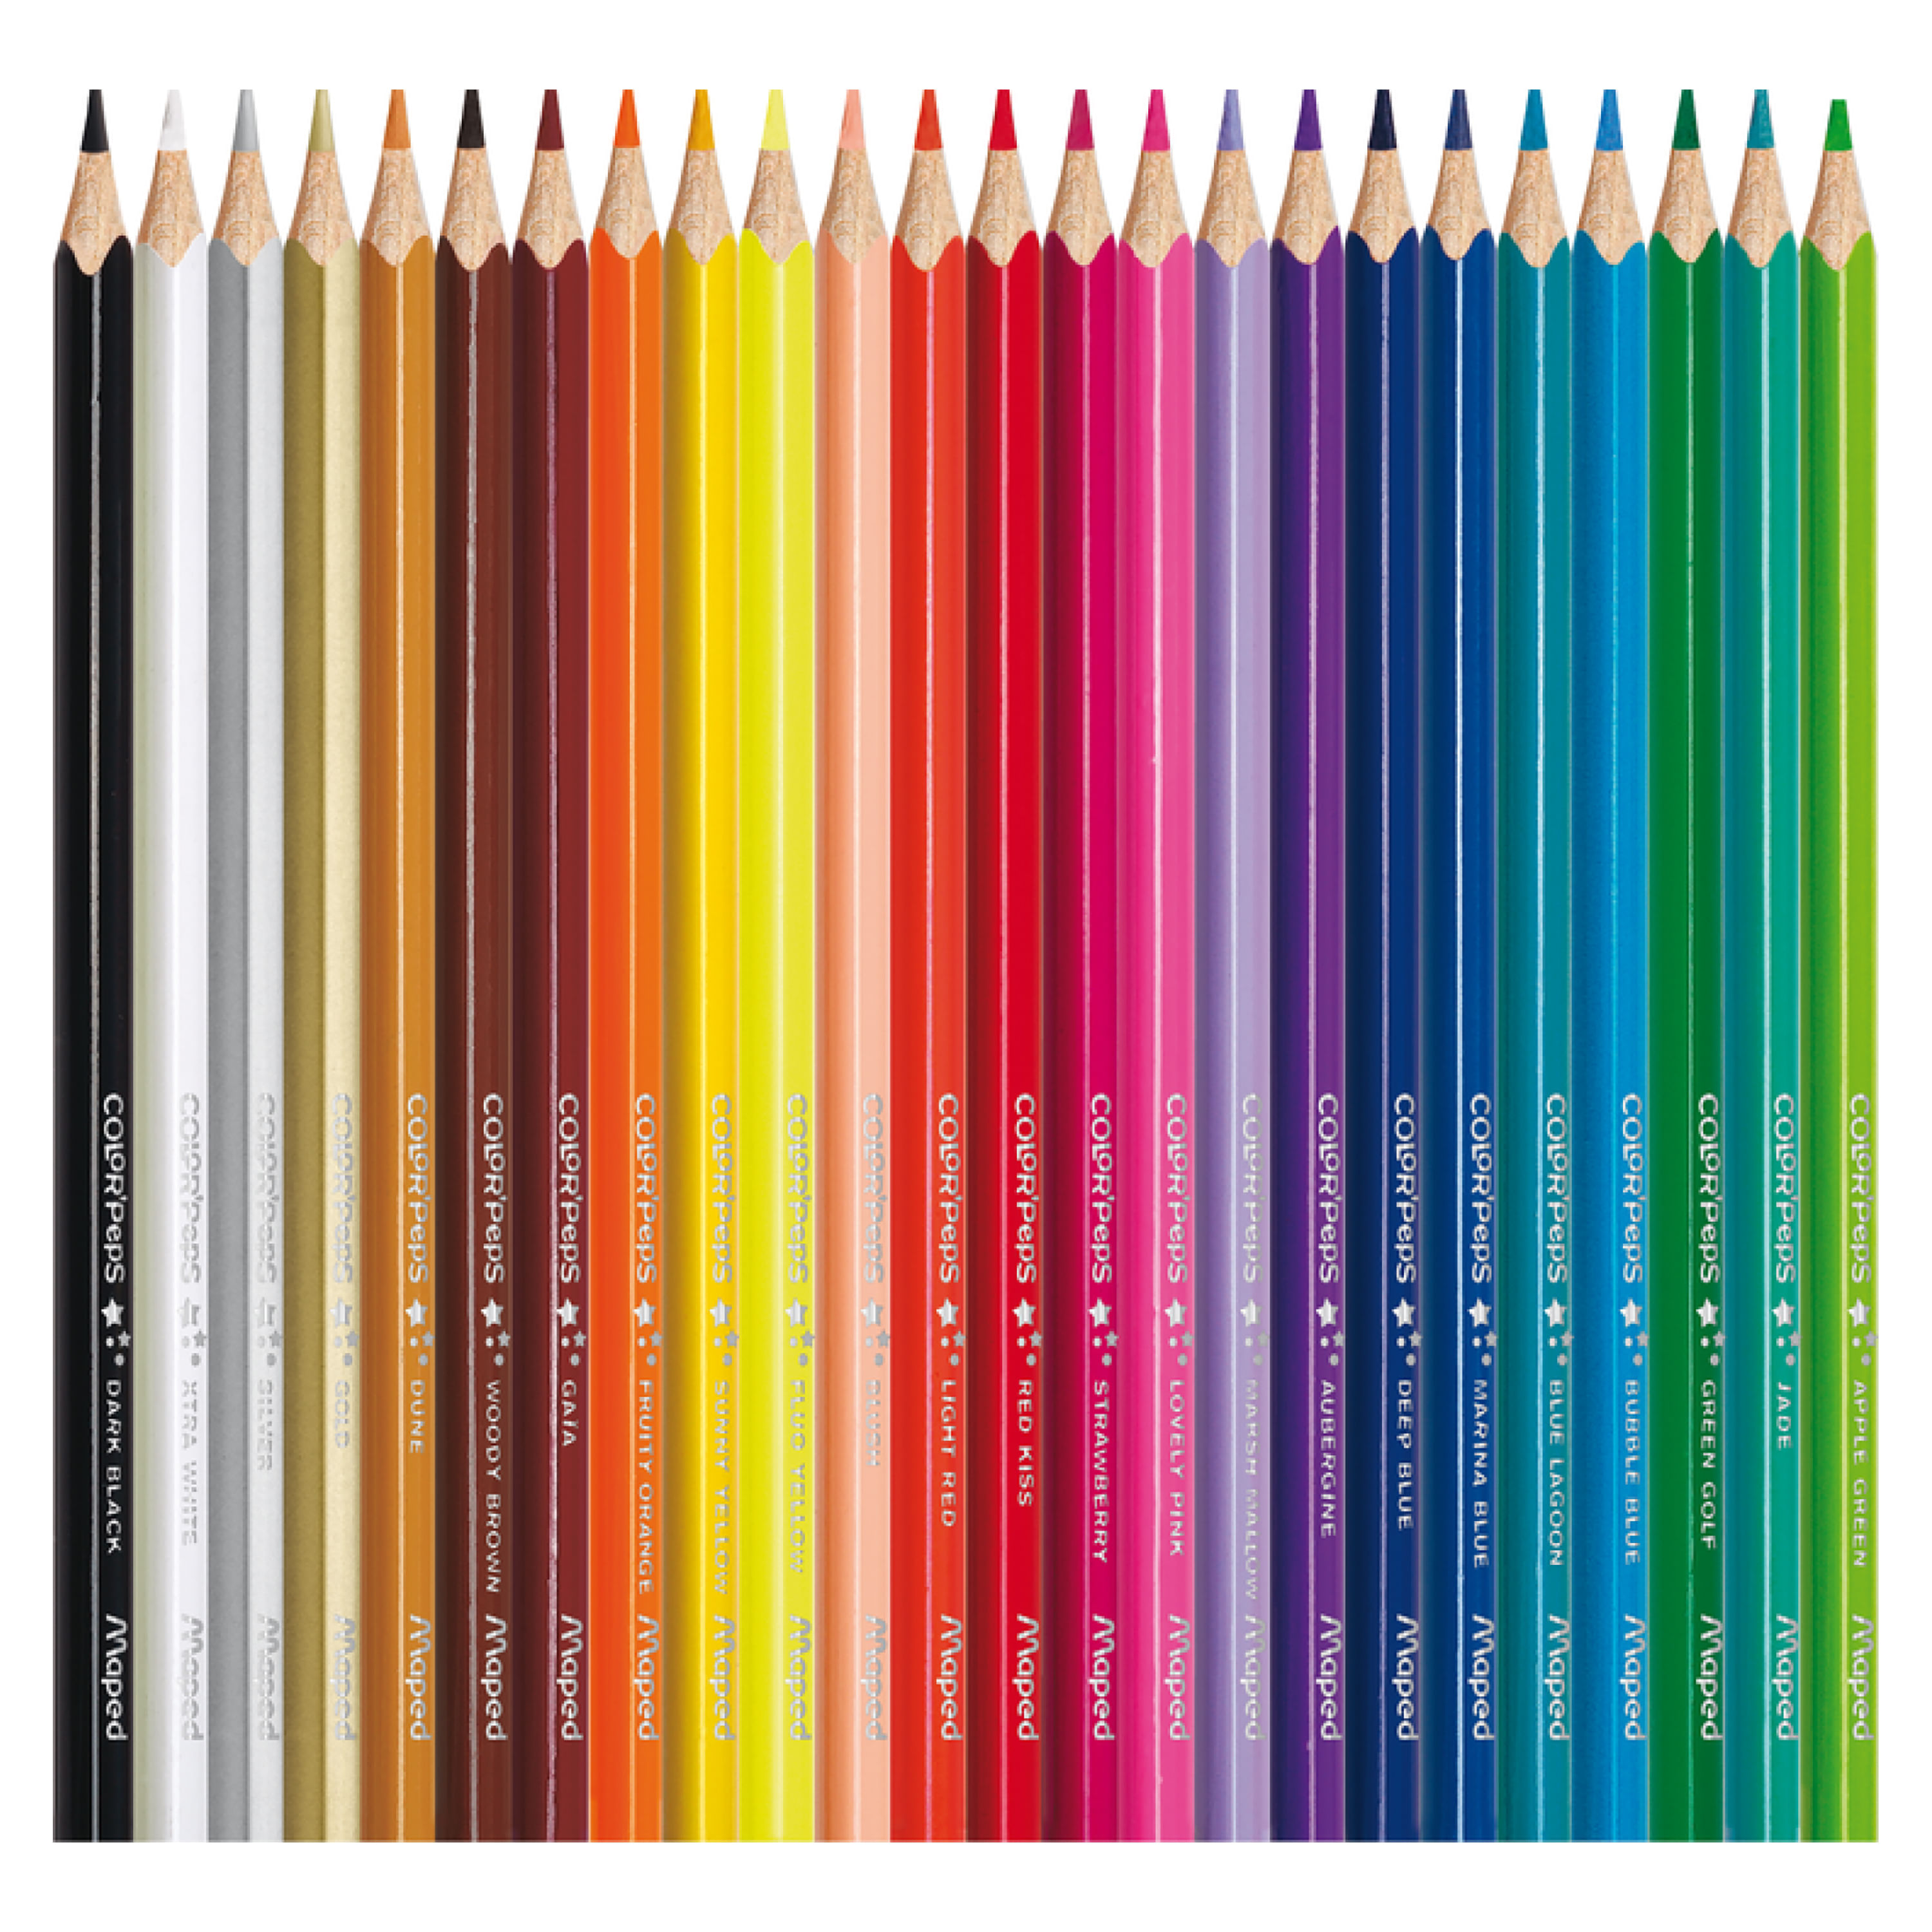 Comprar Lapices de Color Pen Gear, caja -50 uds | Walmart Costa Rica - Maxi  Palí | Compra en línea